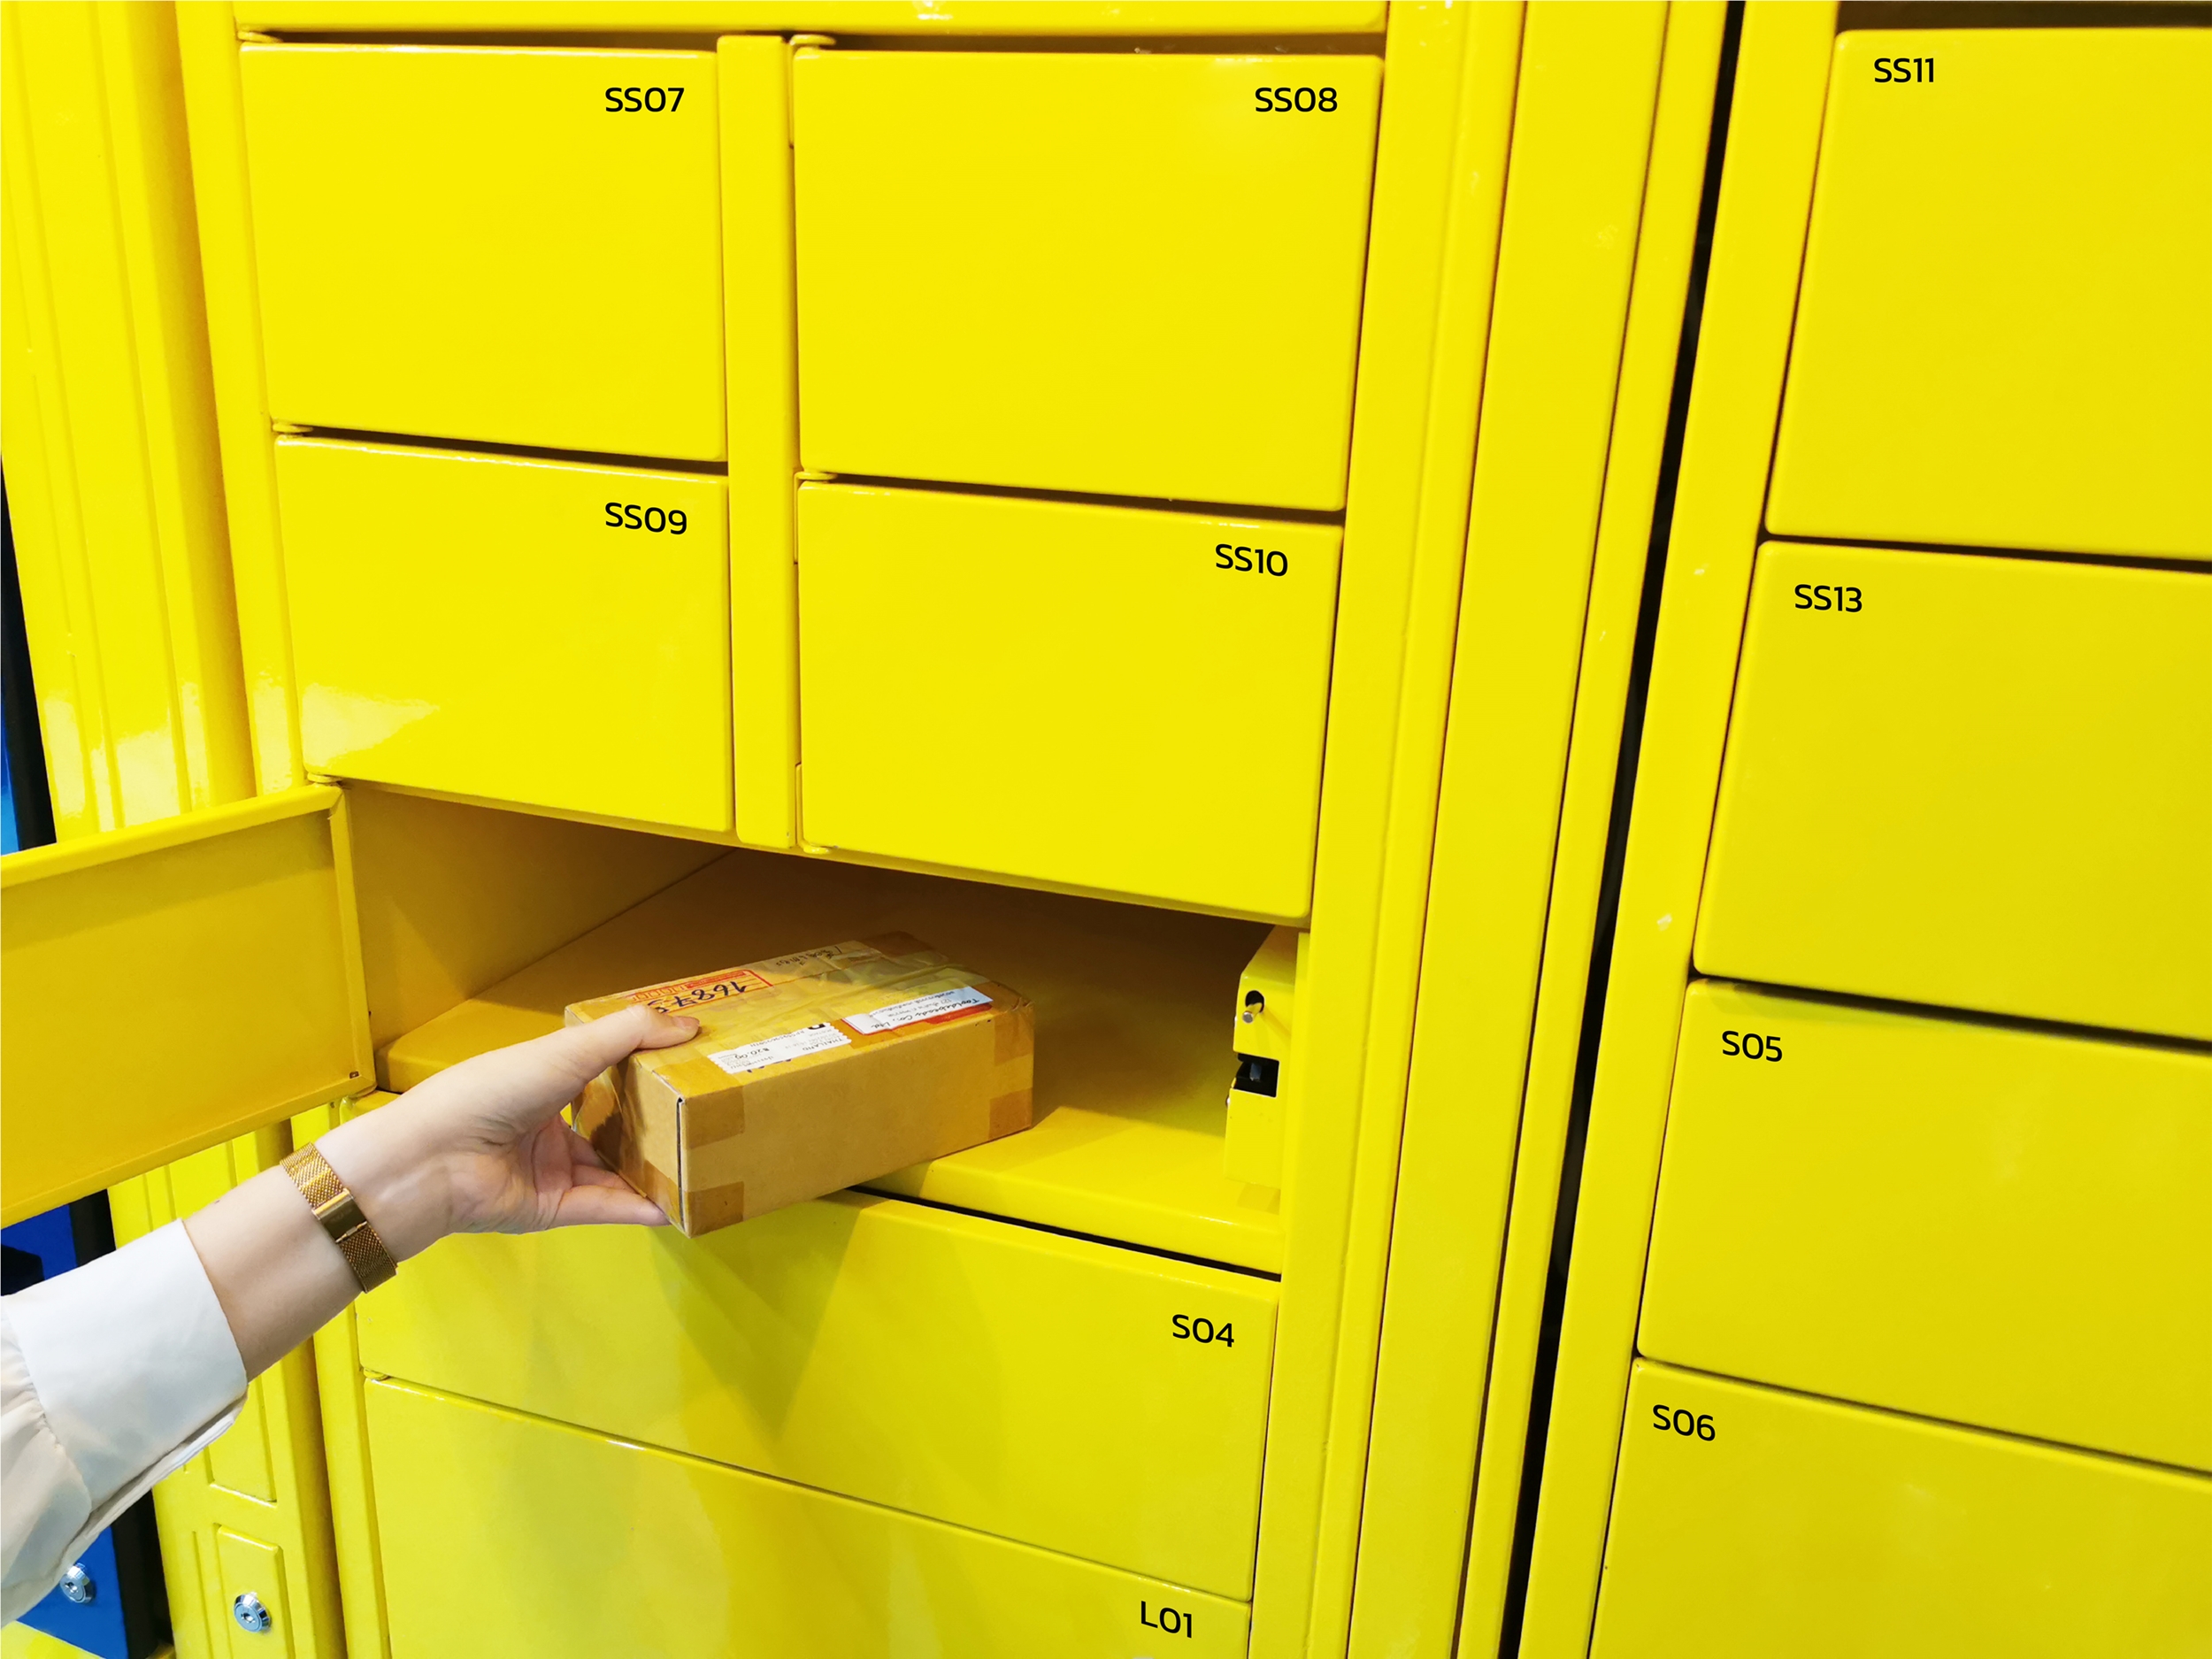 LOCKBOX จับมือ SABUY เปิดตัวบริการใหม่ PUDO รับส่งครบในตู้เดียว ตัวช่วยเสริมแกร่งธุรกิจ E-commerce